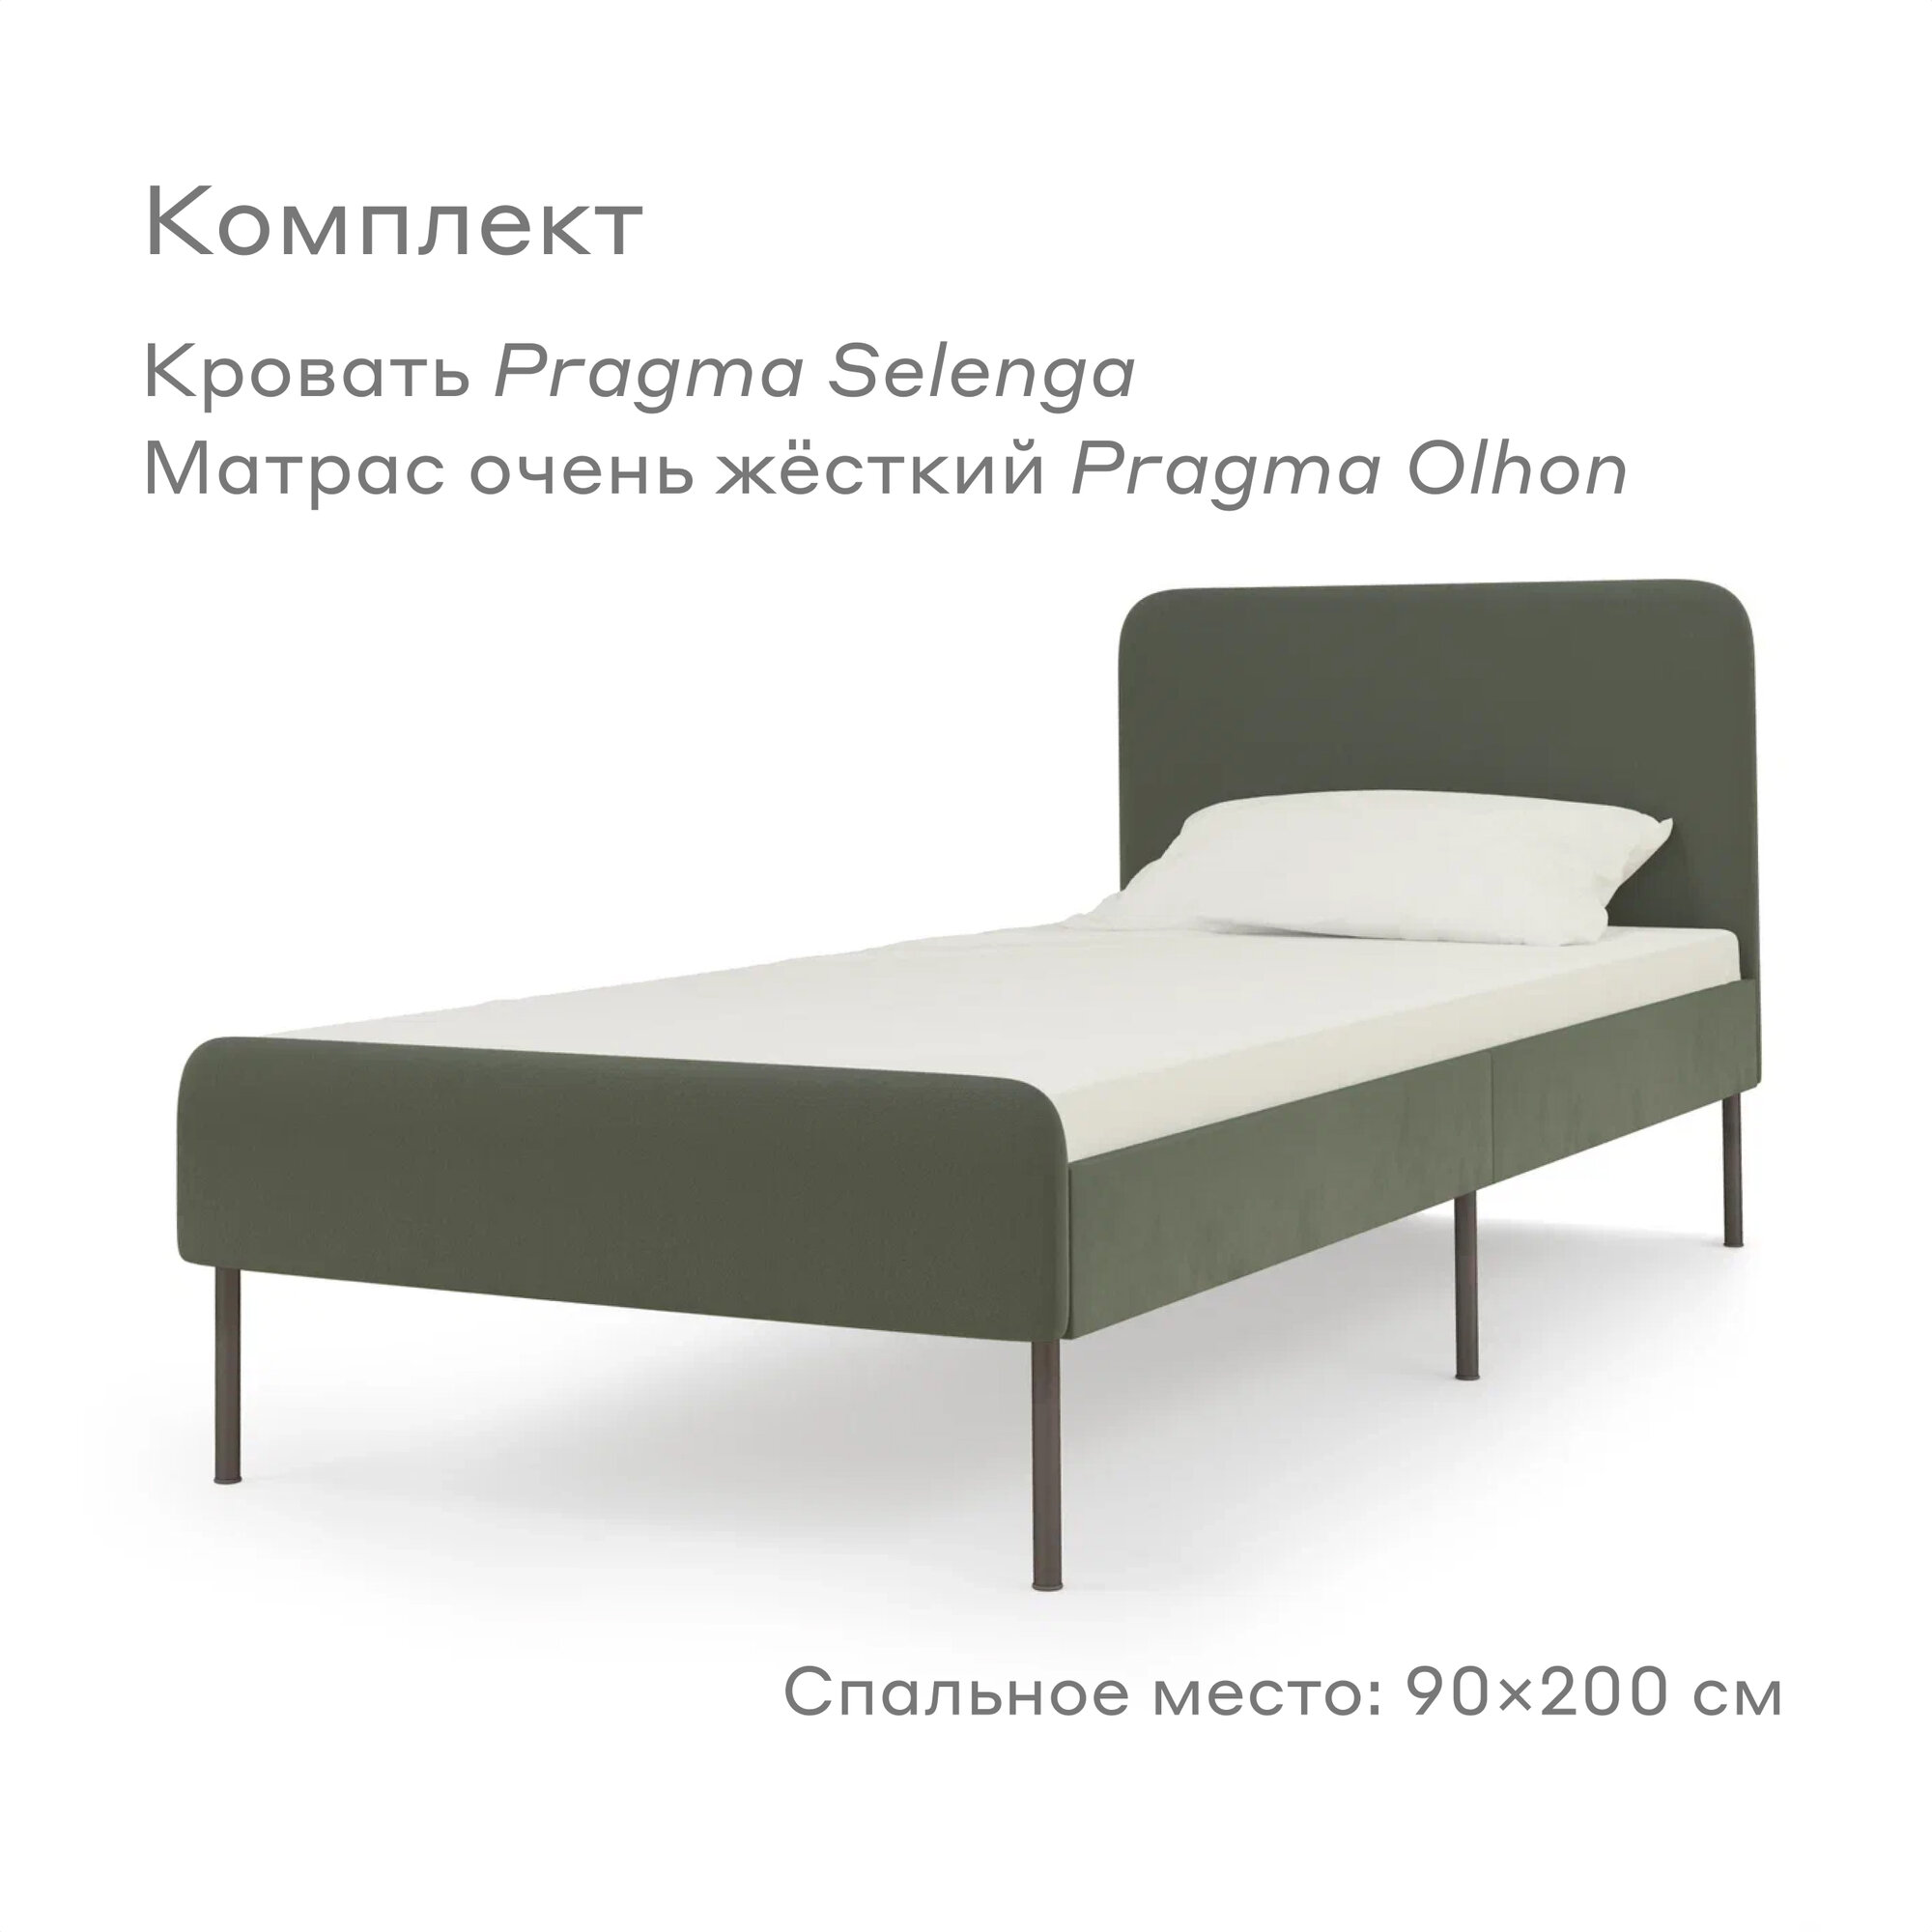 Кровать Pragma Selenga/Olhon с очень жестким матрасом, размер (ДхШ): 206х94 см, спальное место (ДхШ): 200х90 см, обивка: велюр, с матрасом, цвет: зеленый